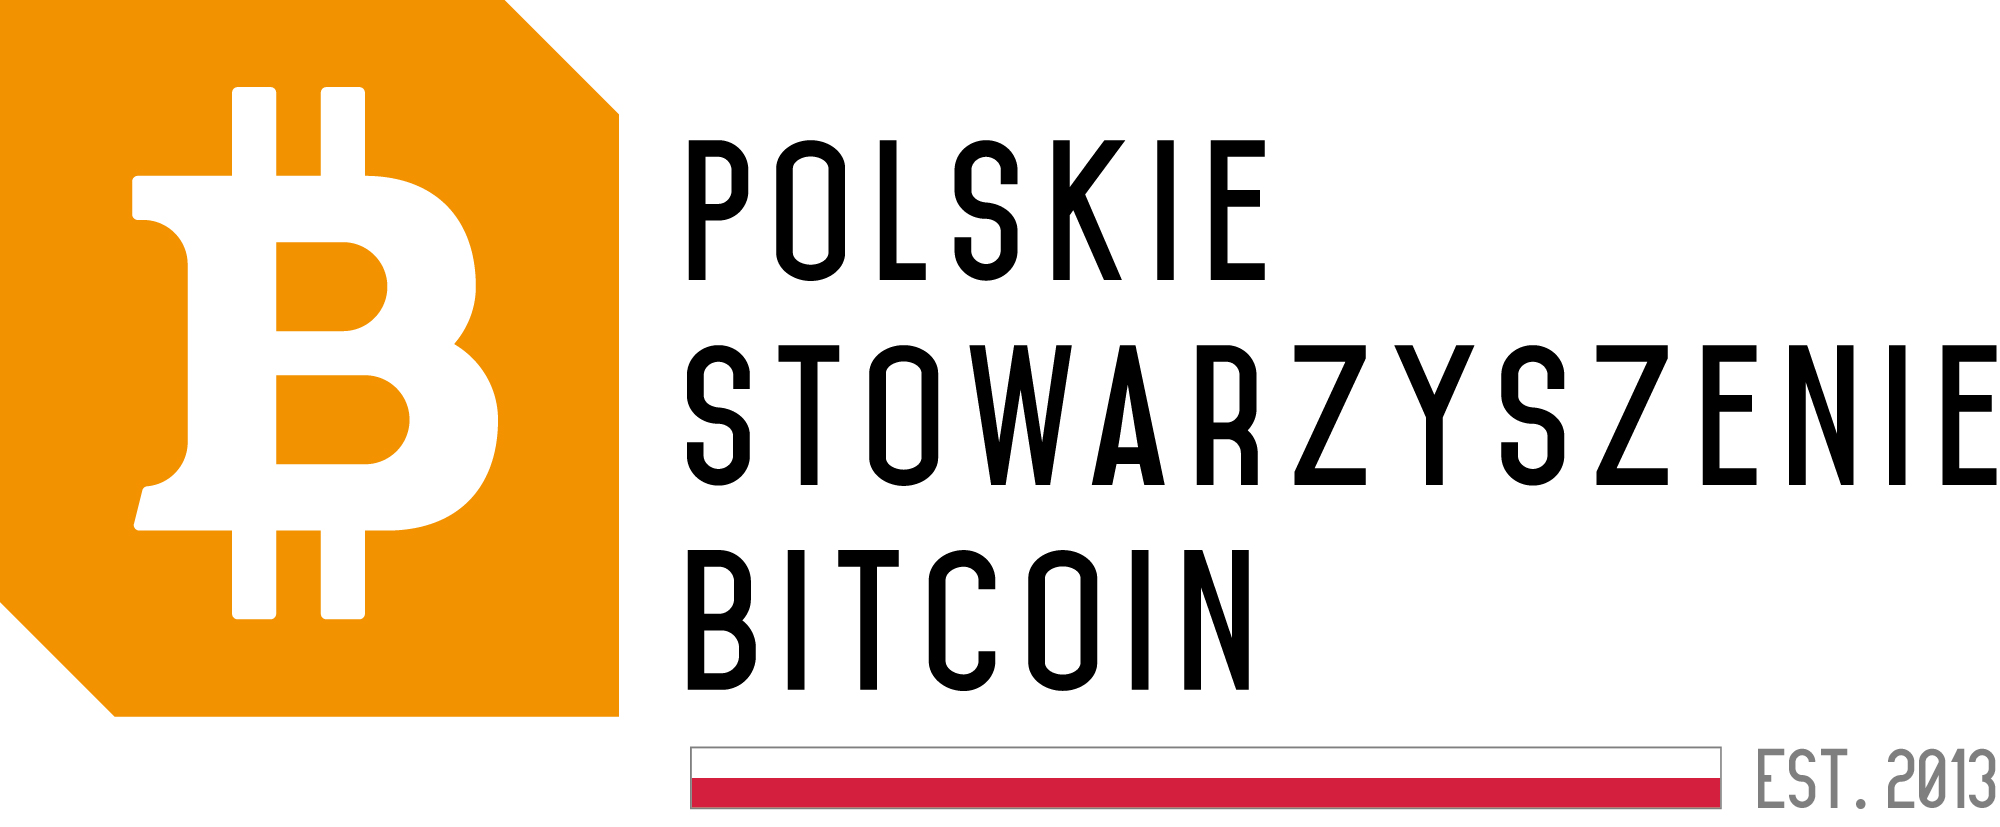 Polskie Stowarzyszenie Bitcoin